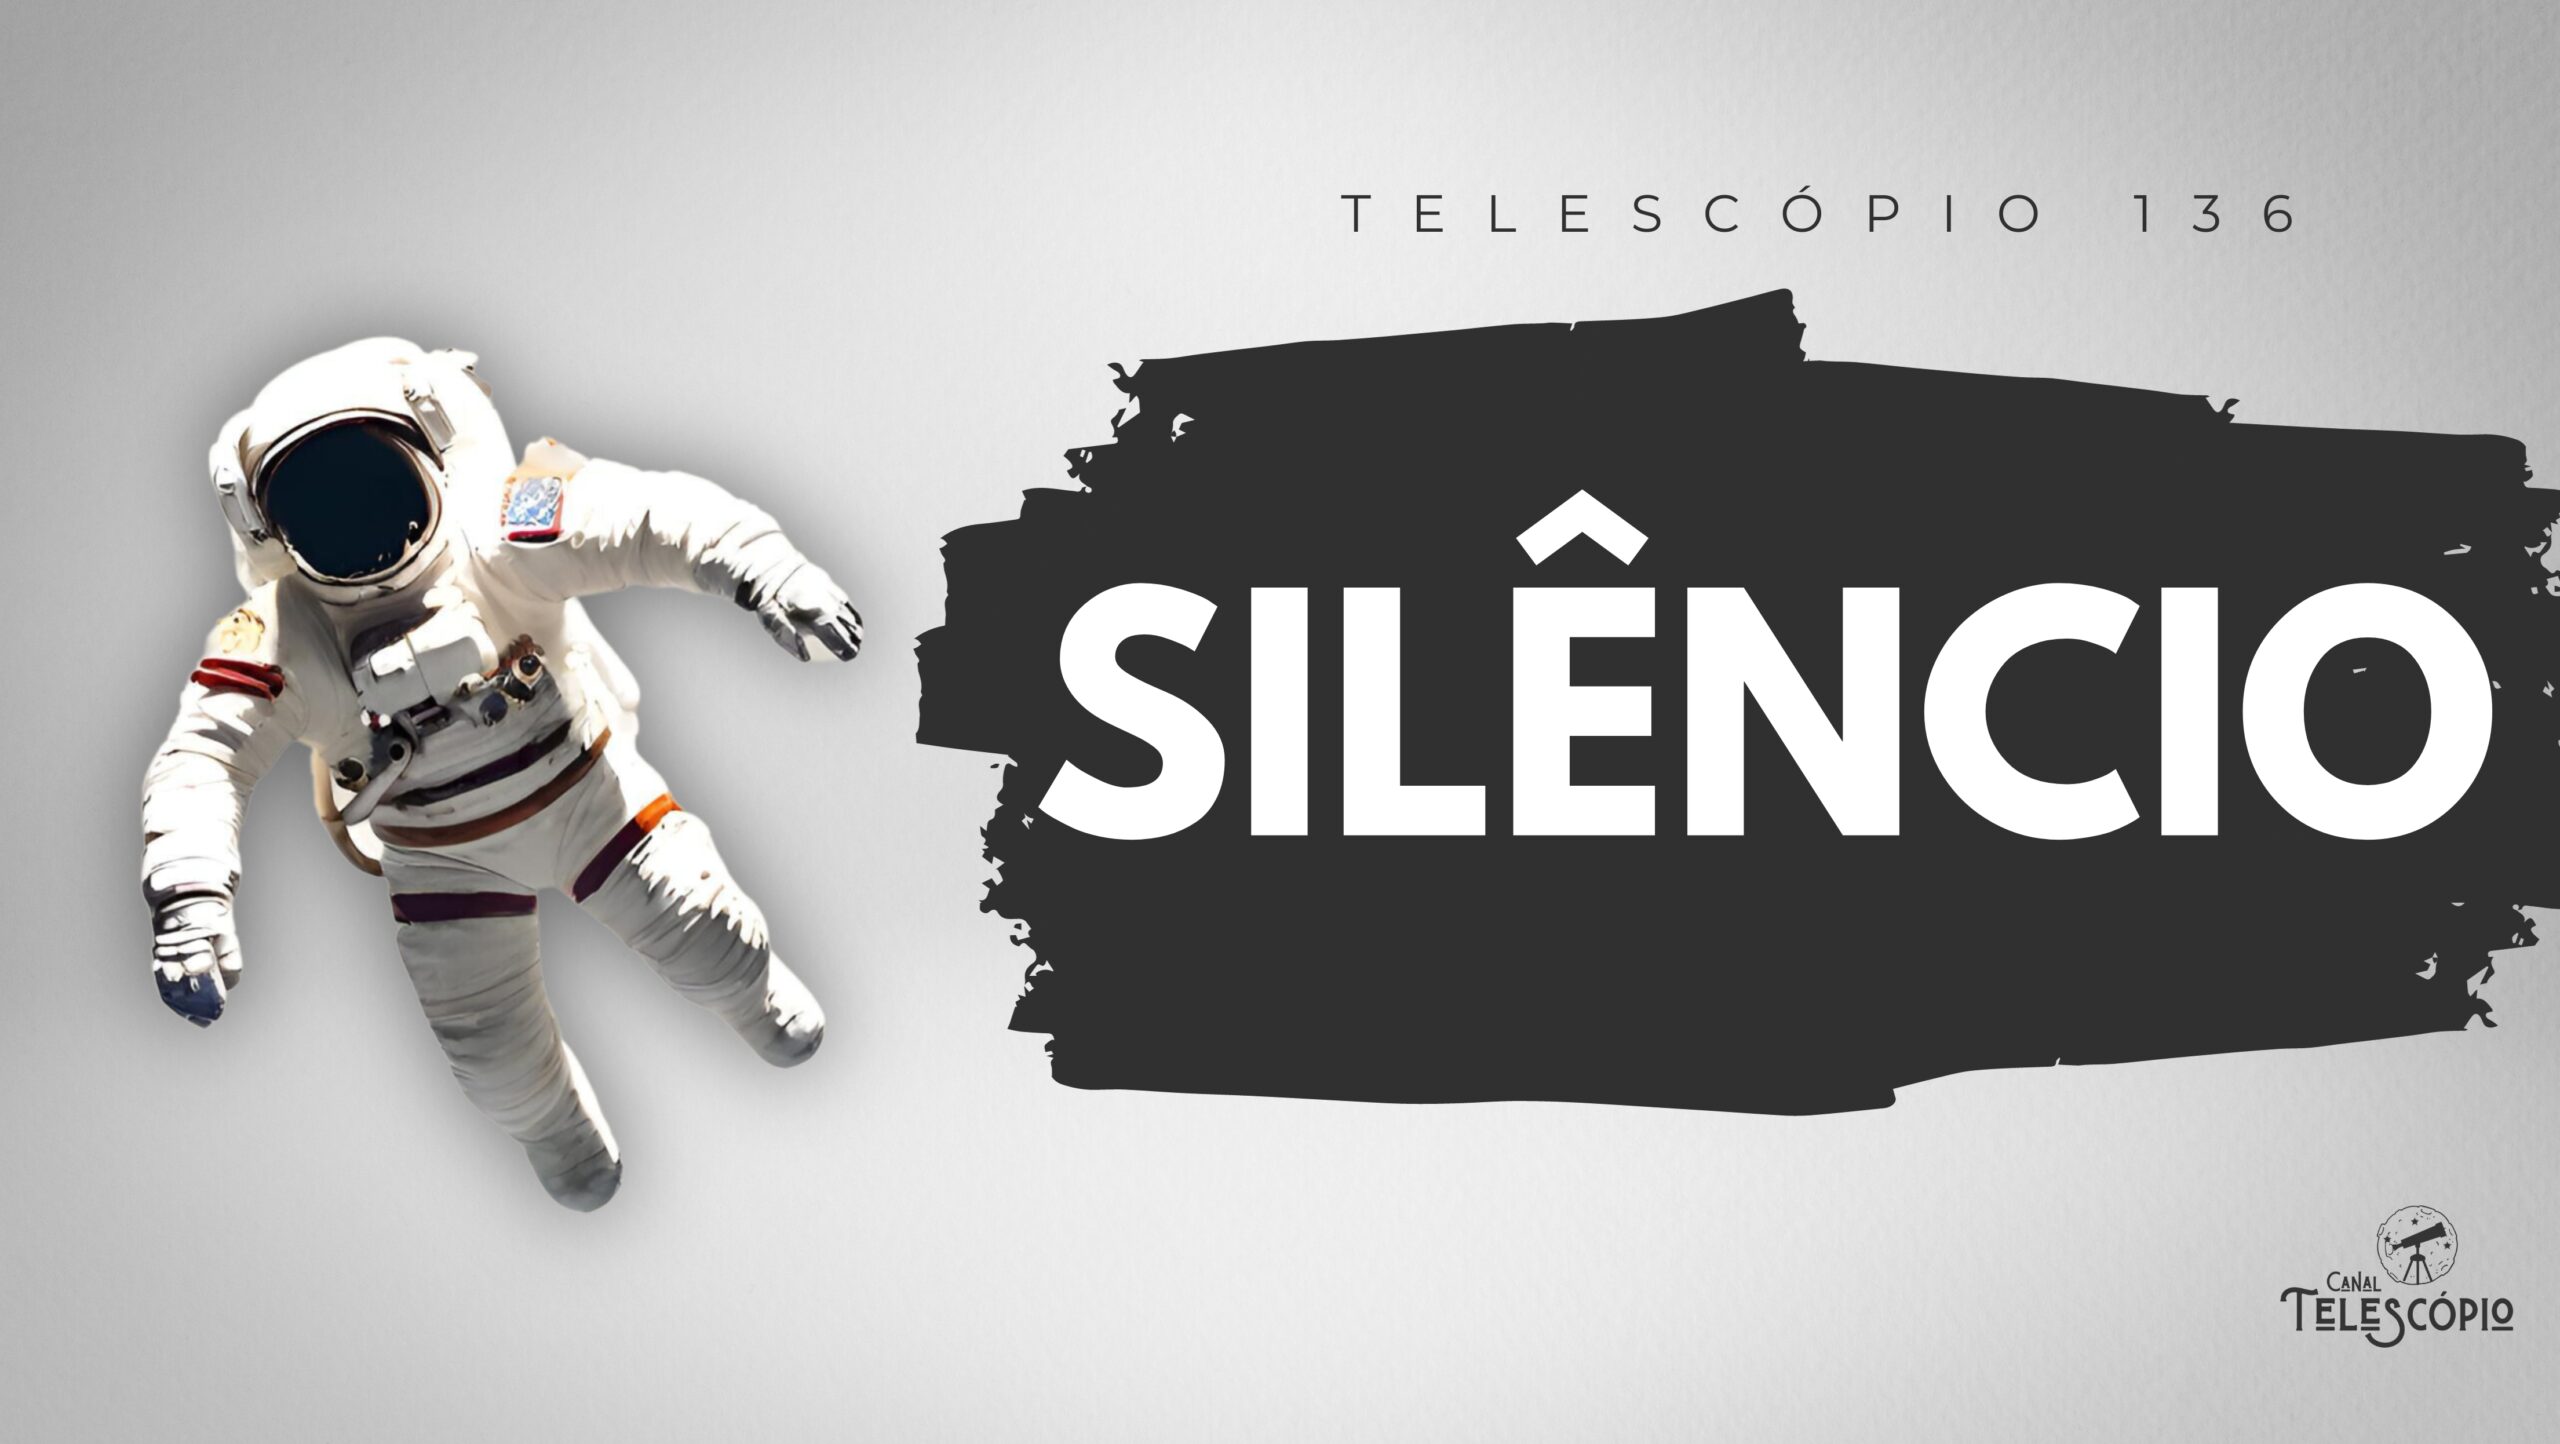 Imagem de um astronauta solitário em um espaço vazio branco. Na frente, letreiro com o título do programa: "Silêncio".